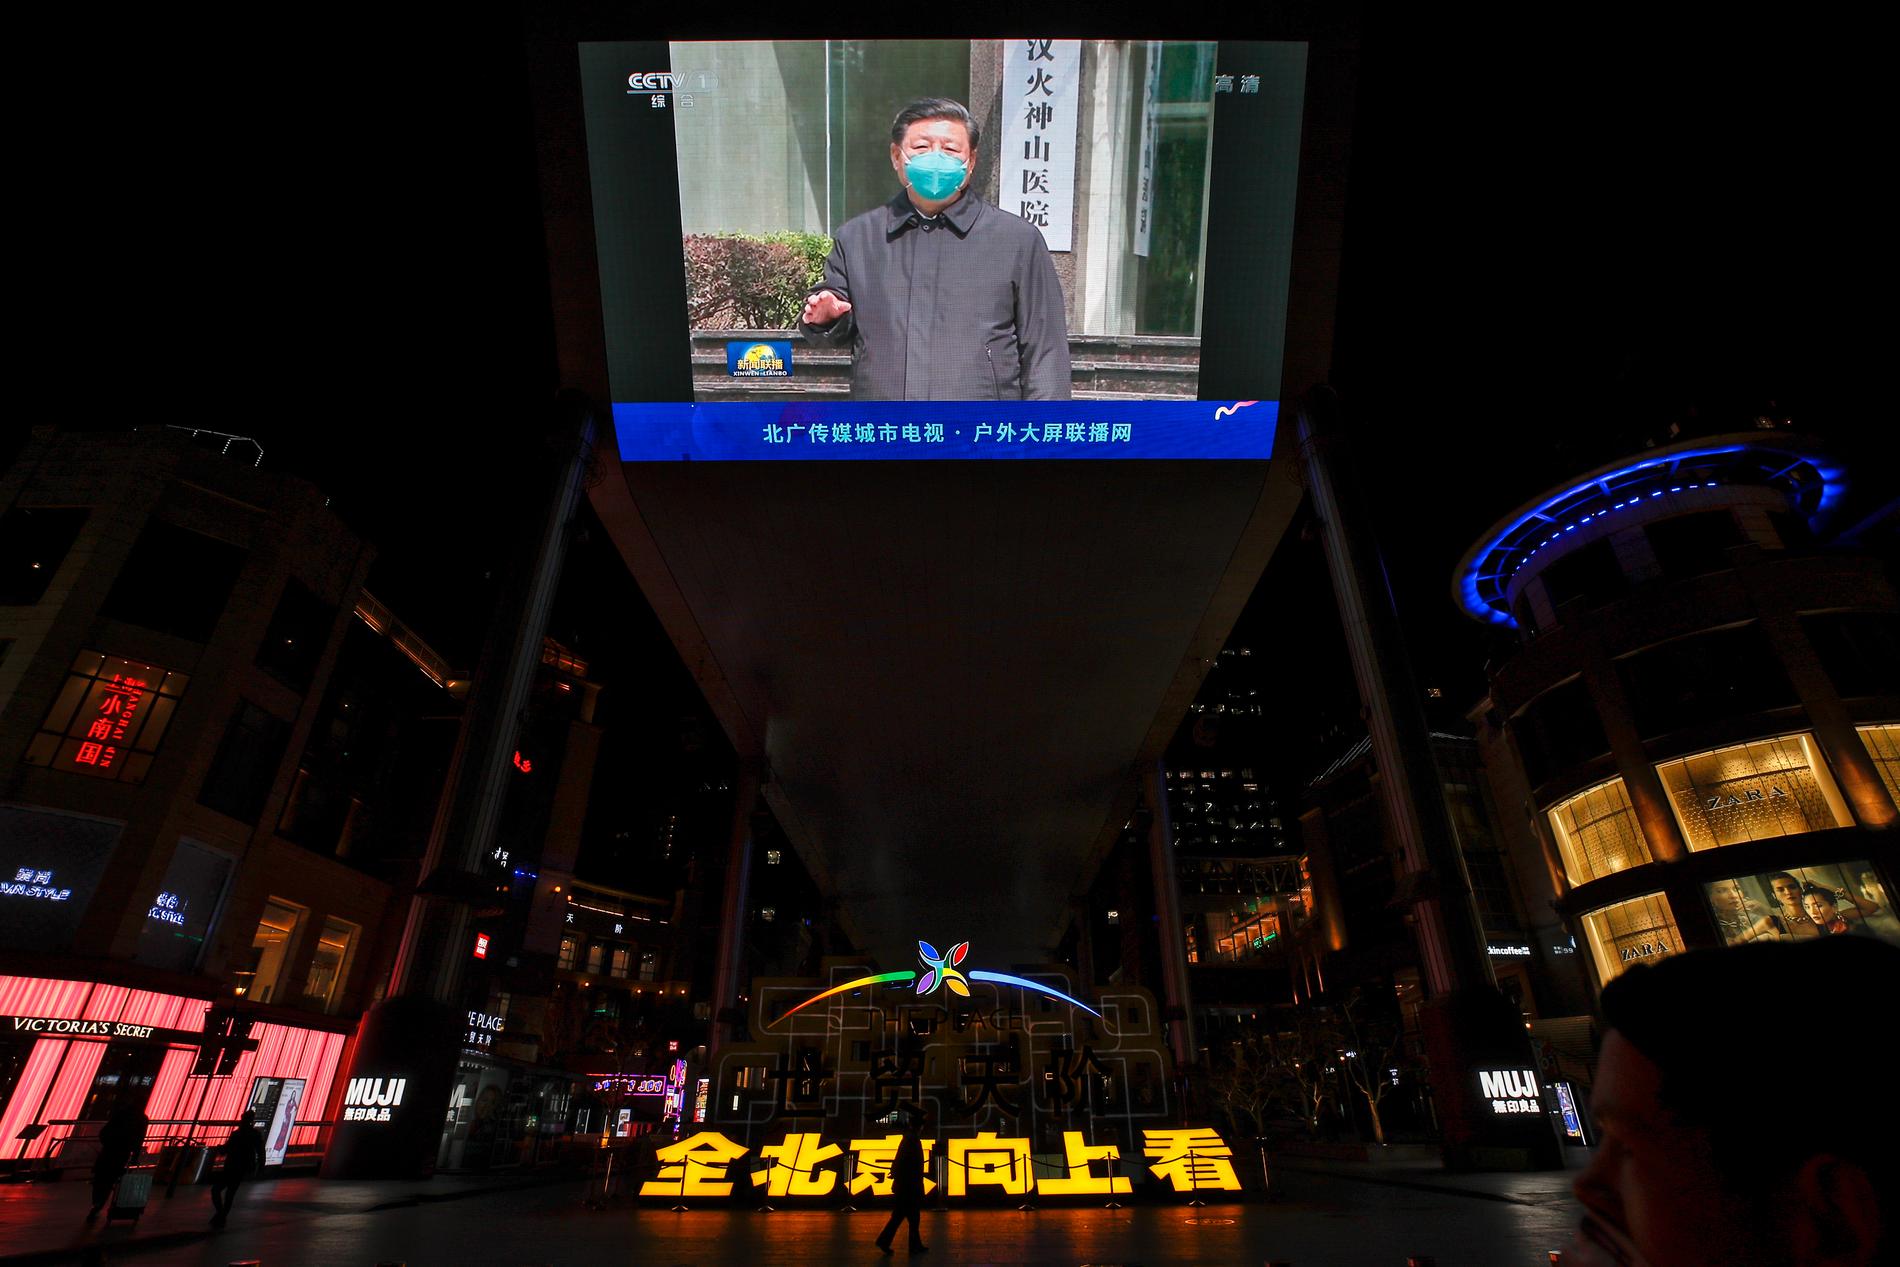 Kinas president Xi Jinping iförd ansiktsskydd under sitt besök i Wuhan i Hubei på tisdagen.